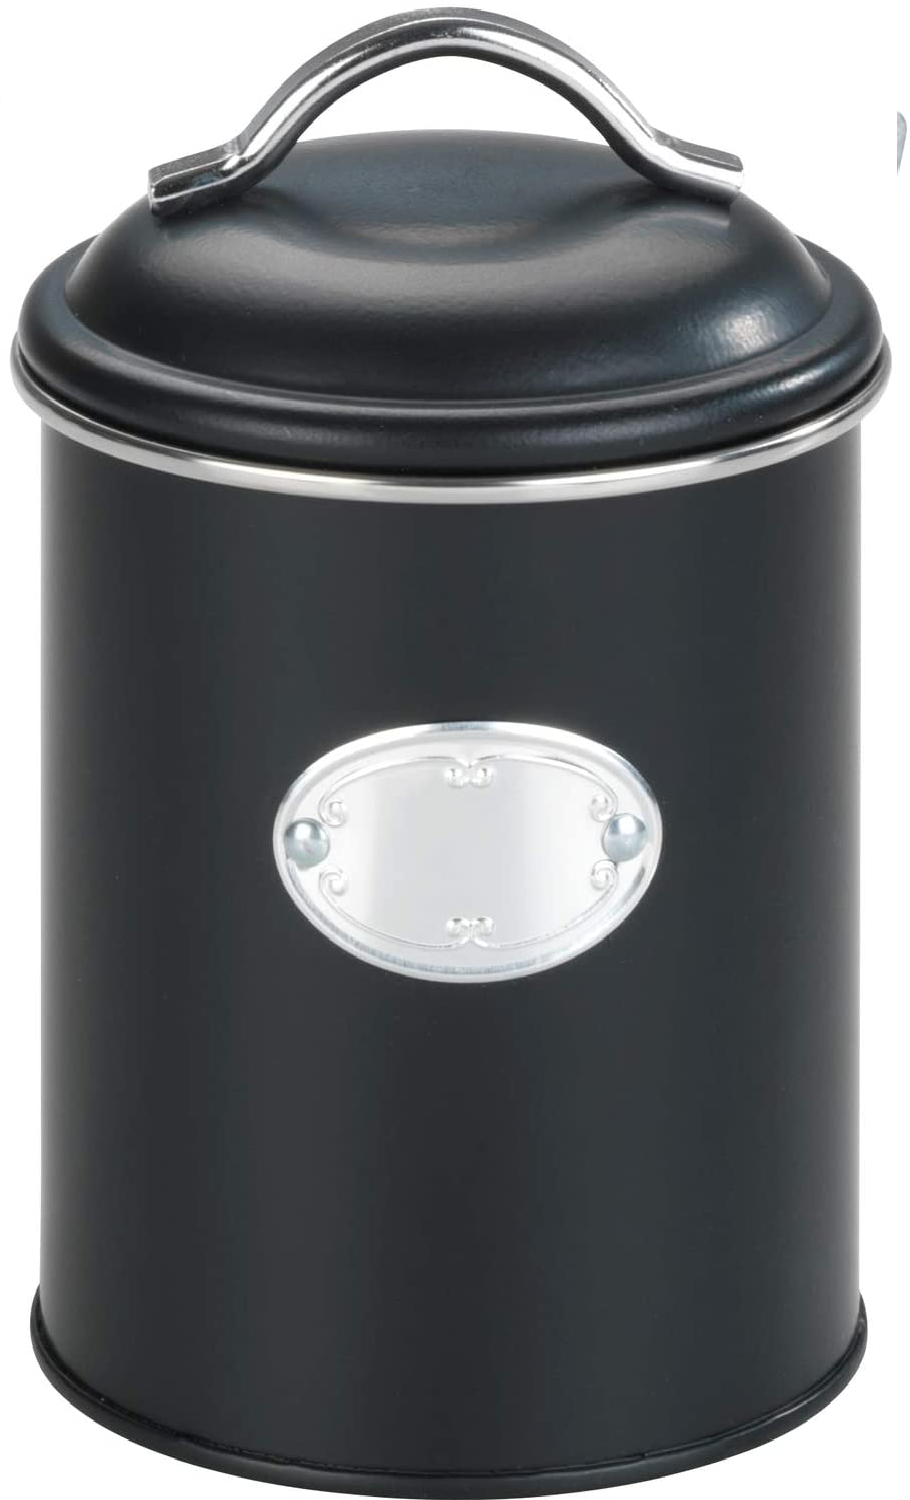 Aufbewahrungsdose Nero, 1 Liter, Frischhaltedose zur luftdichten Aufbewahrung von Lebensmitteln, wasserdicht, aus lackiertem Metall mit Applikation, Retro-Design, Ø 11,5 x 16,5 cm, Schwarz